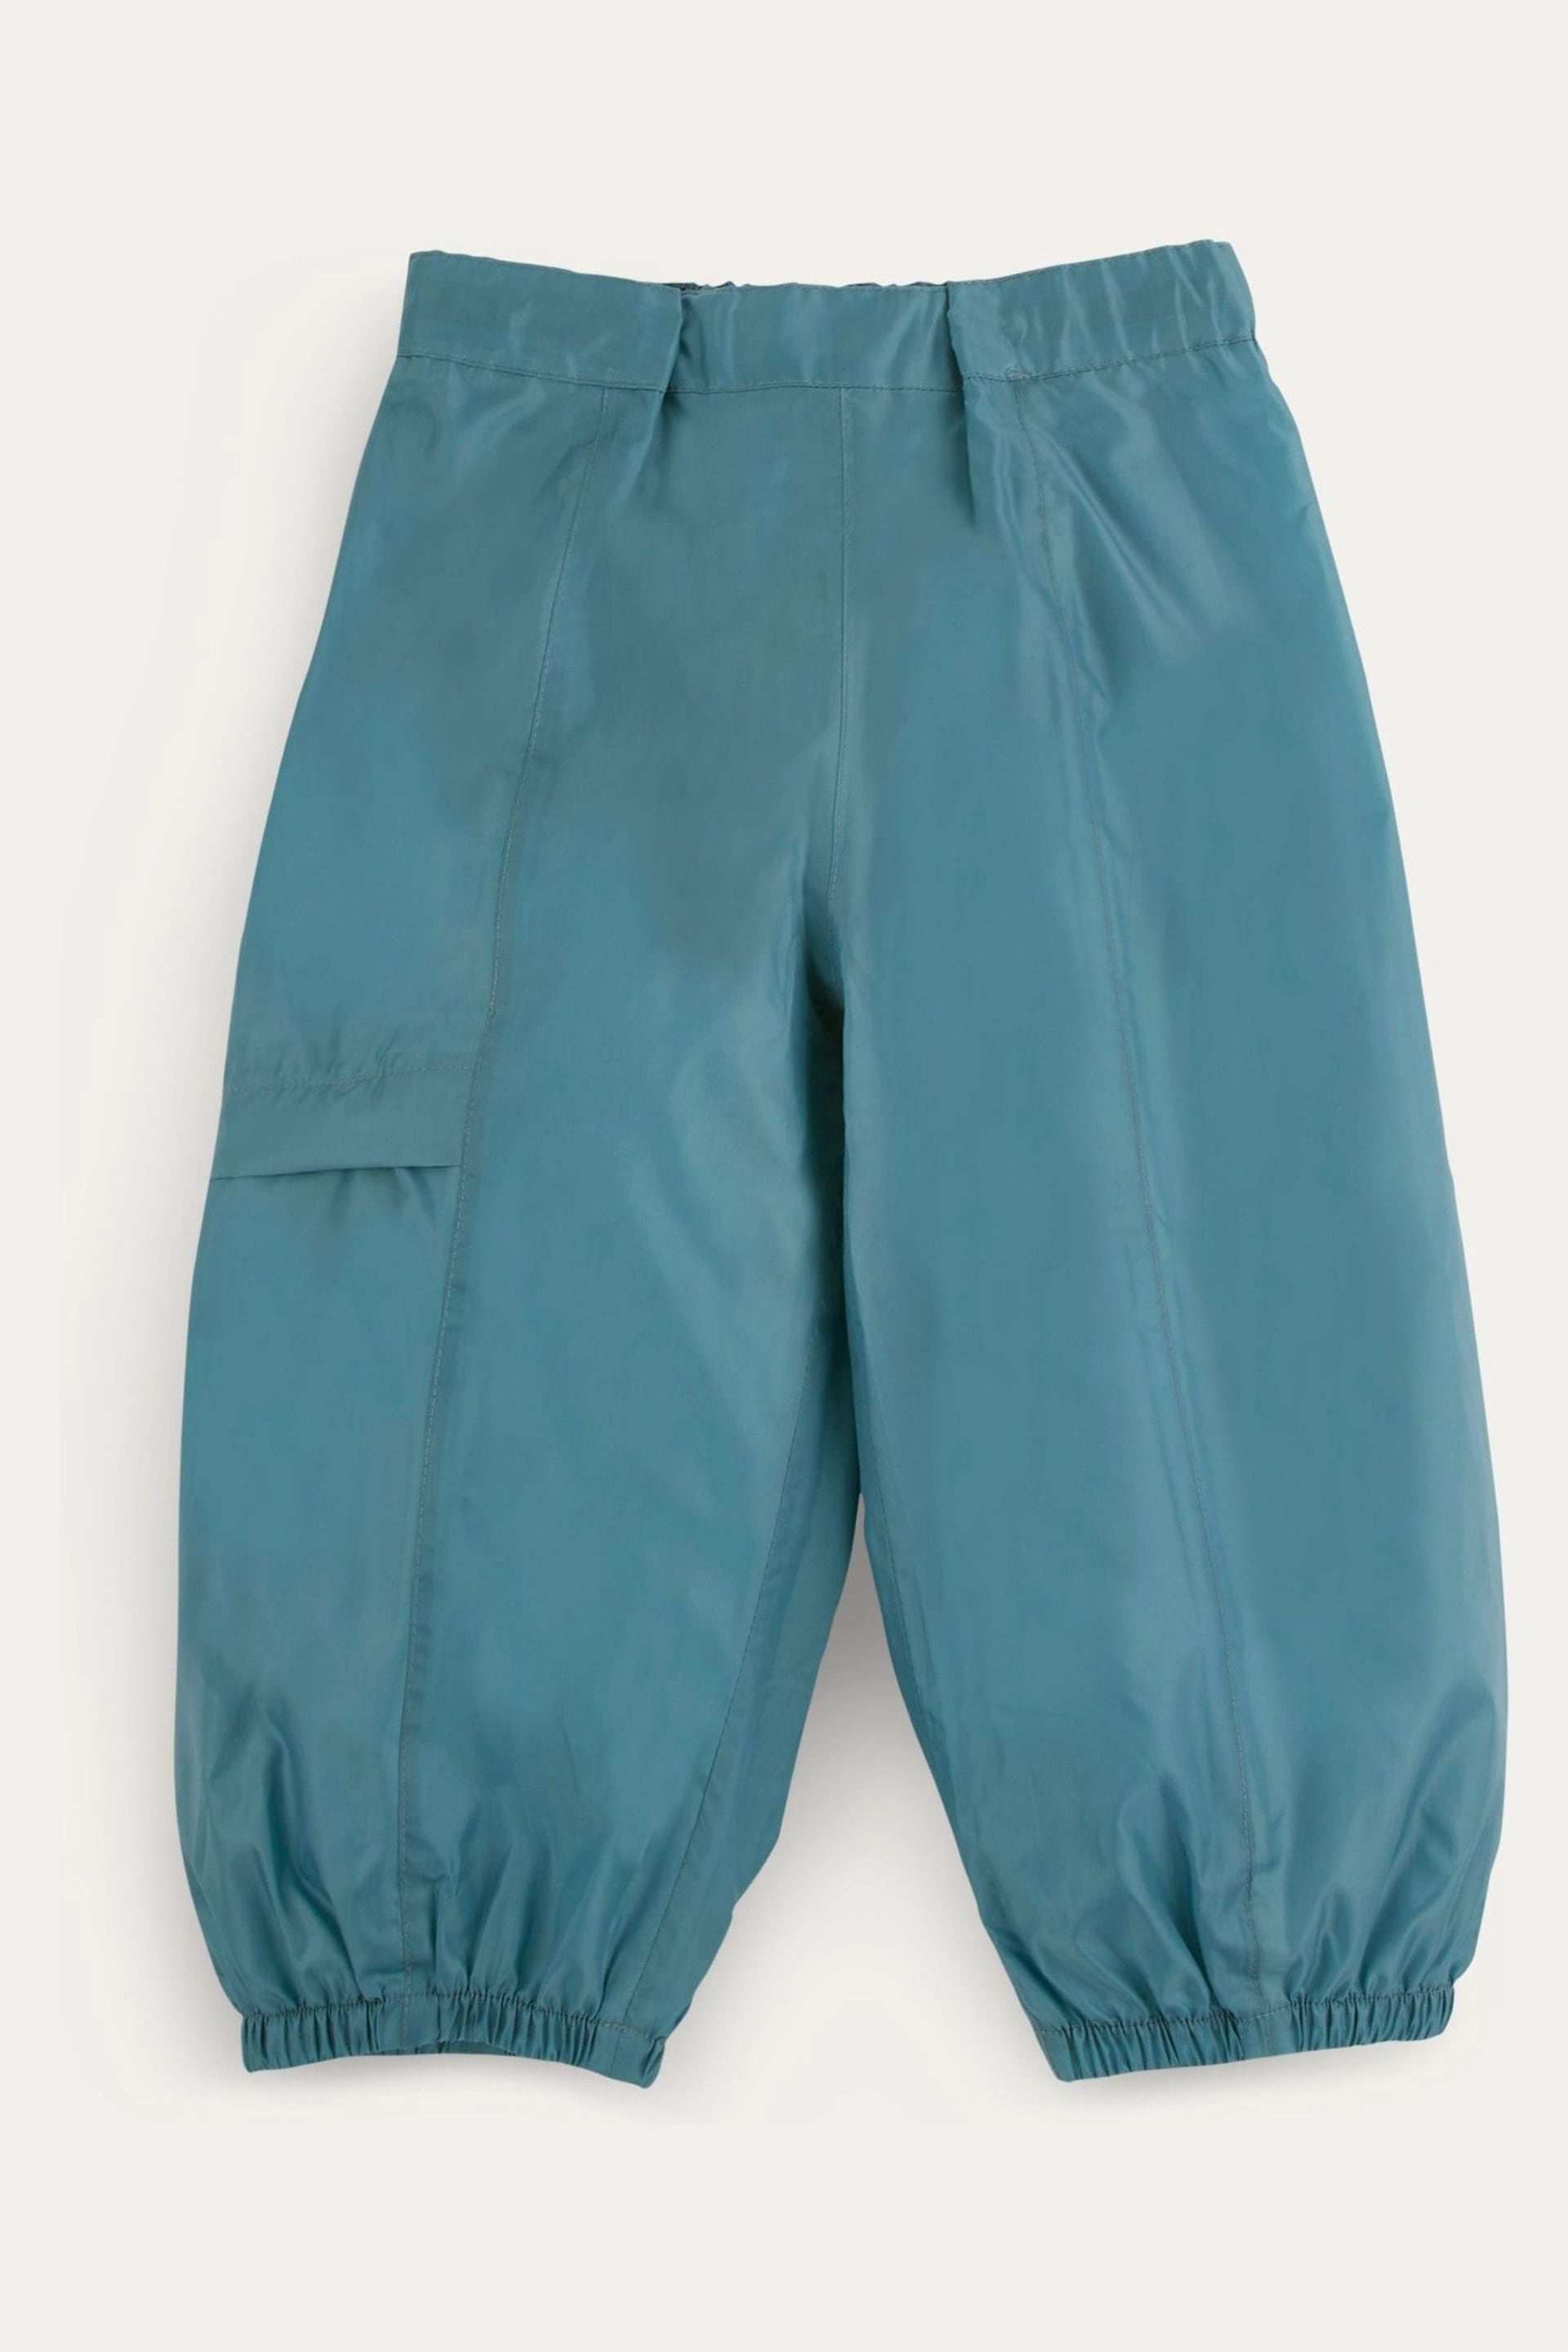 KIDLY Unisex Waterproof Packaway Trousers - Image 1 of 4